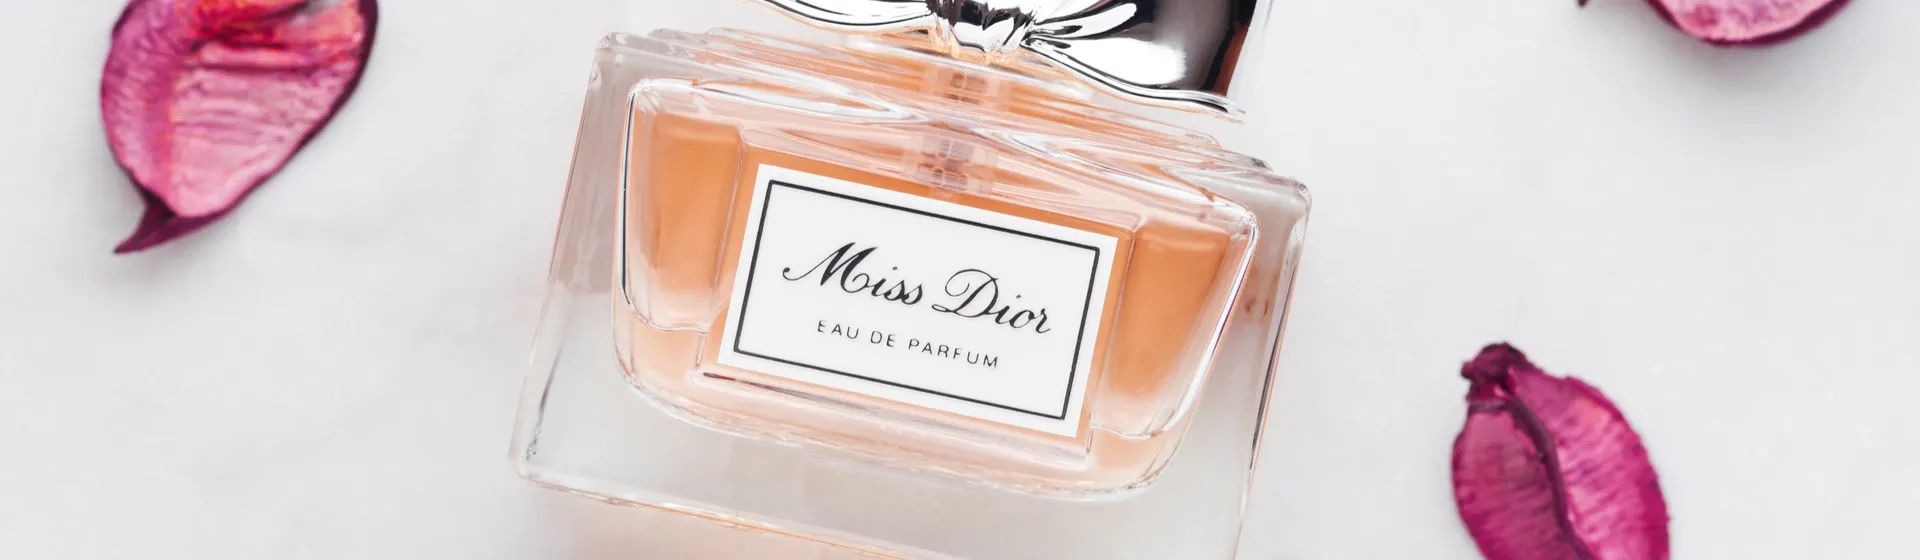 Perfume Dior: 7 fragrâncias da grife para comprar